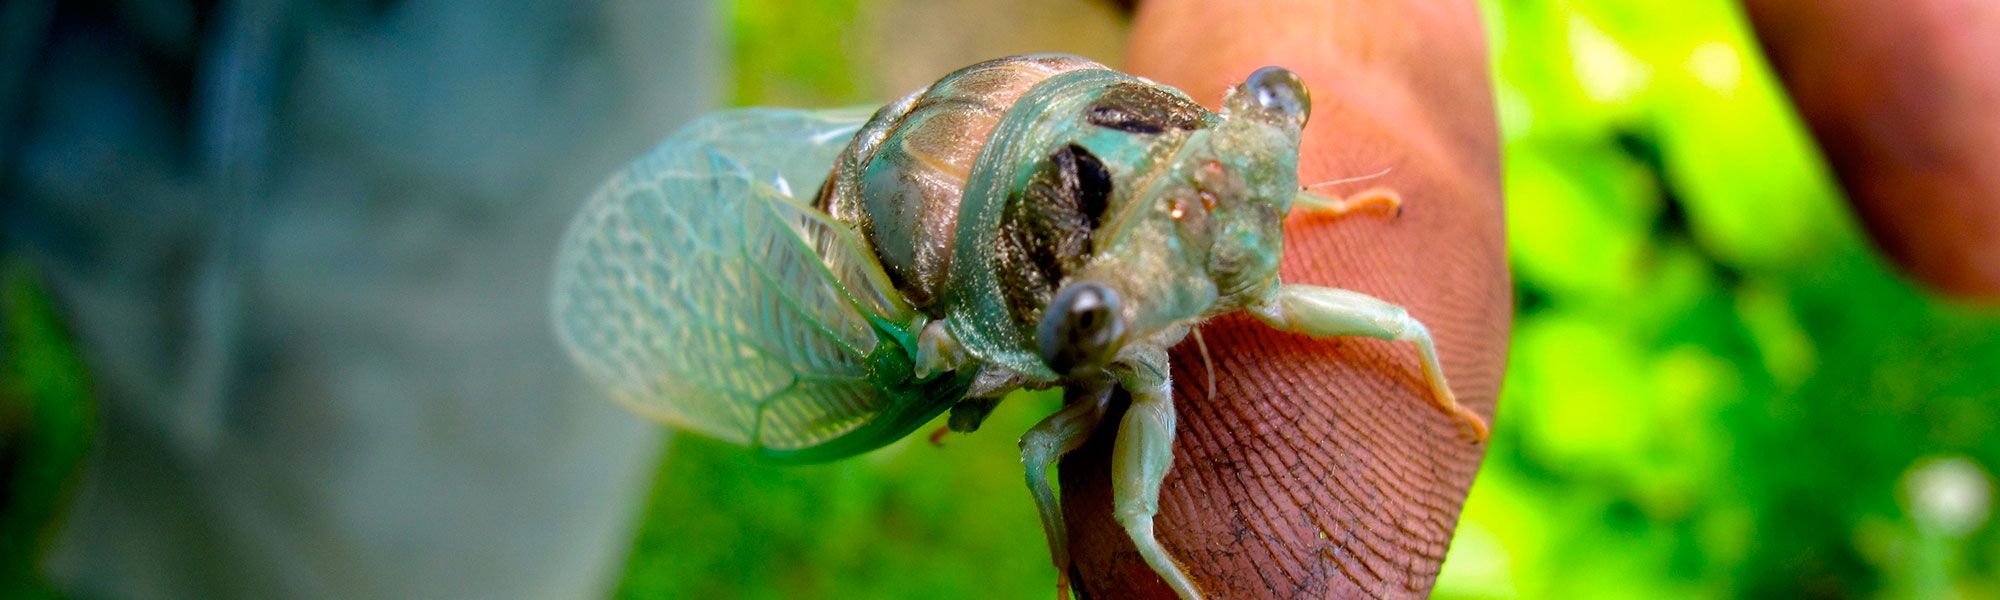 Close-up Photo of a Cicada